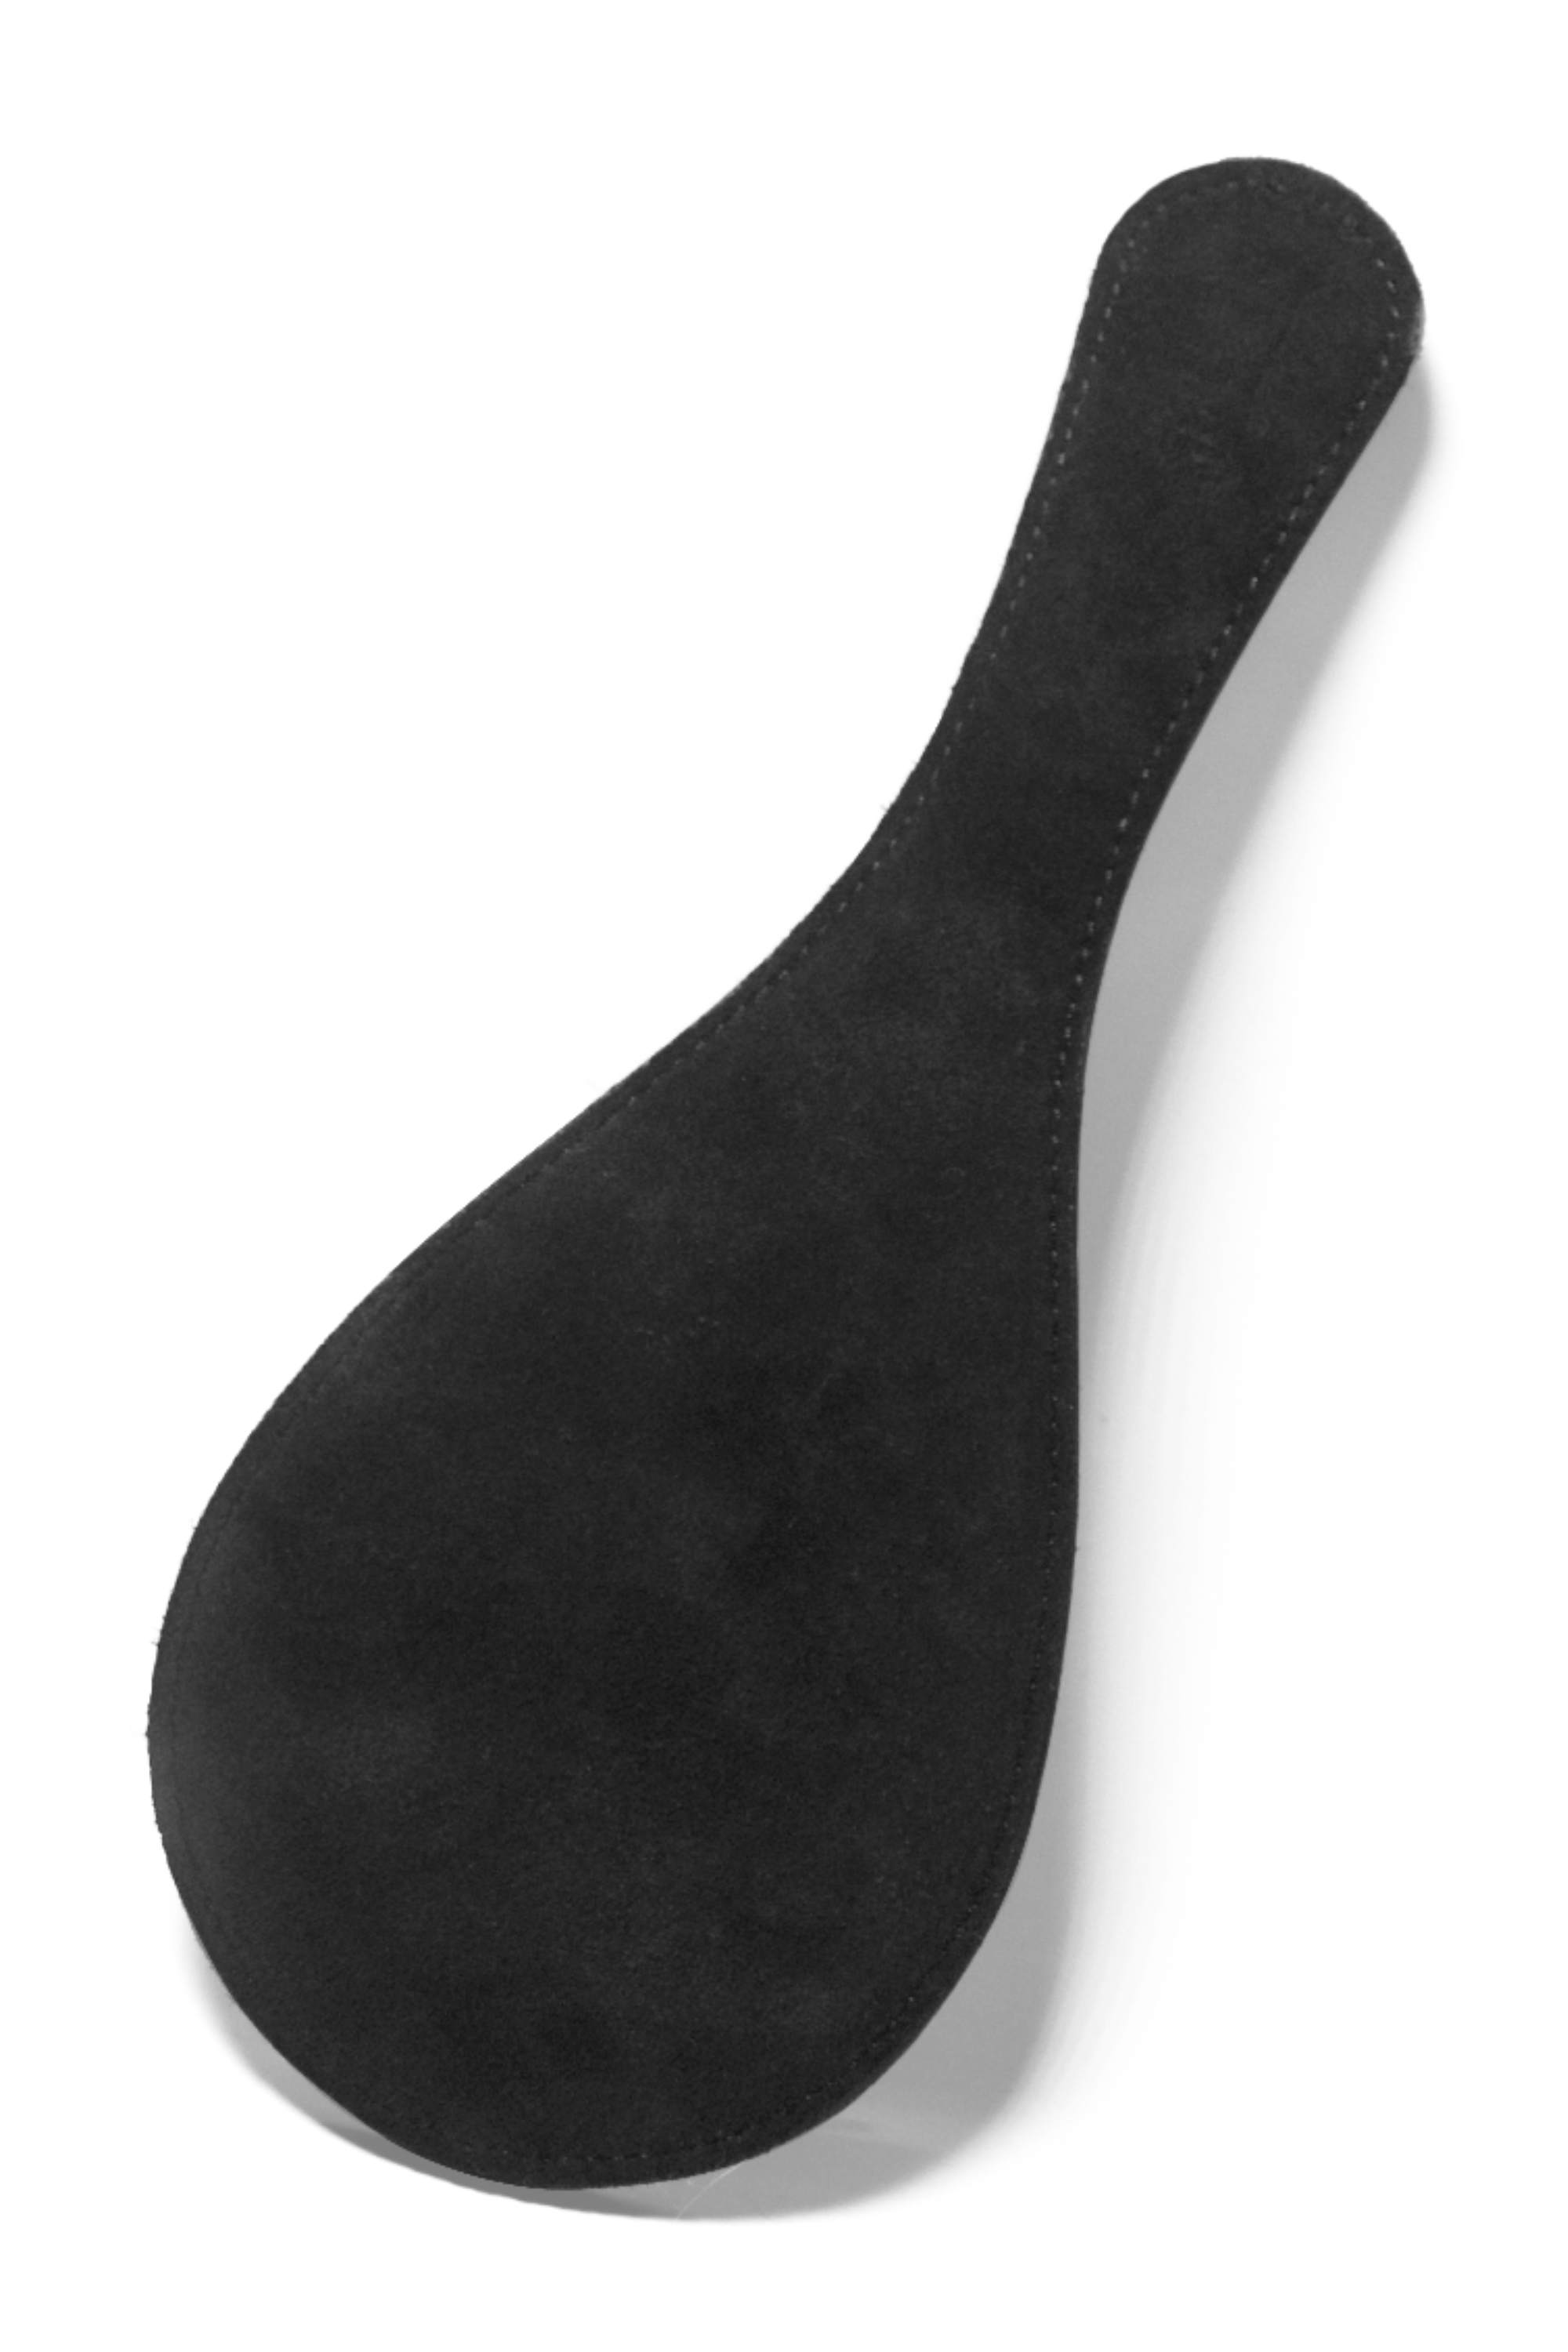 Black Leather Round Paddle